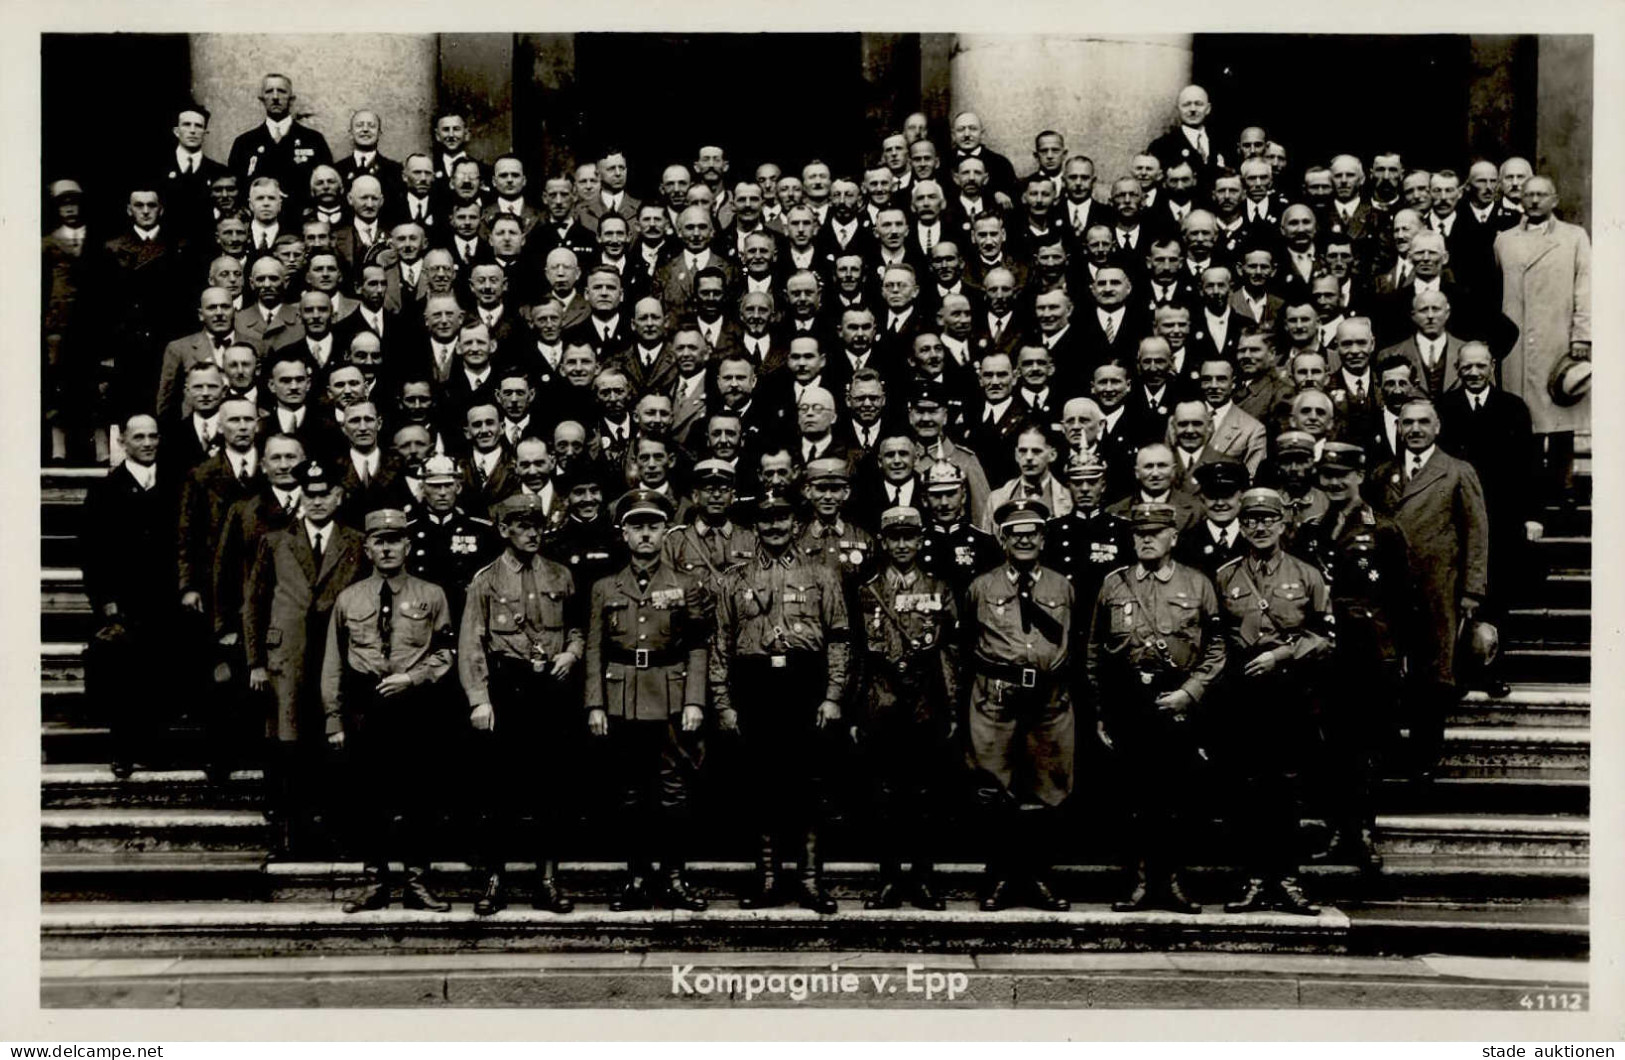 Zwischenkriegszeit Badonviller Feier 1934 8. Kompagnie V. Epp Foto-AK I-II - Andere Kriege